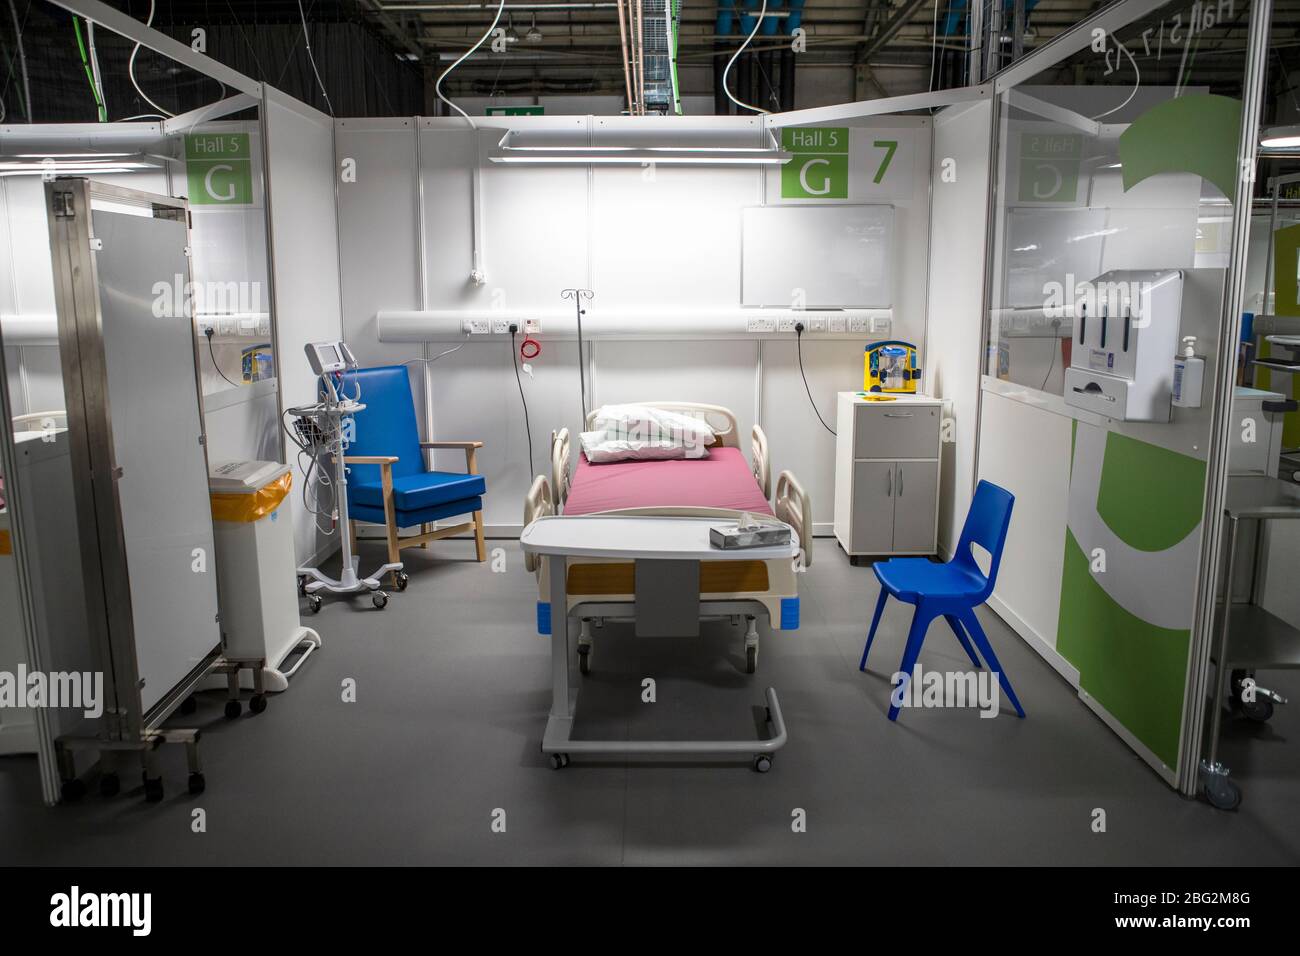 Baie patient après la construction de l'hôpital NHS Louisa Jordan, construit au SEC Center de Glasgow, pour prendre soin des patients coronavirus. Banque D'Images